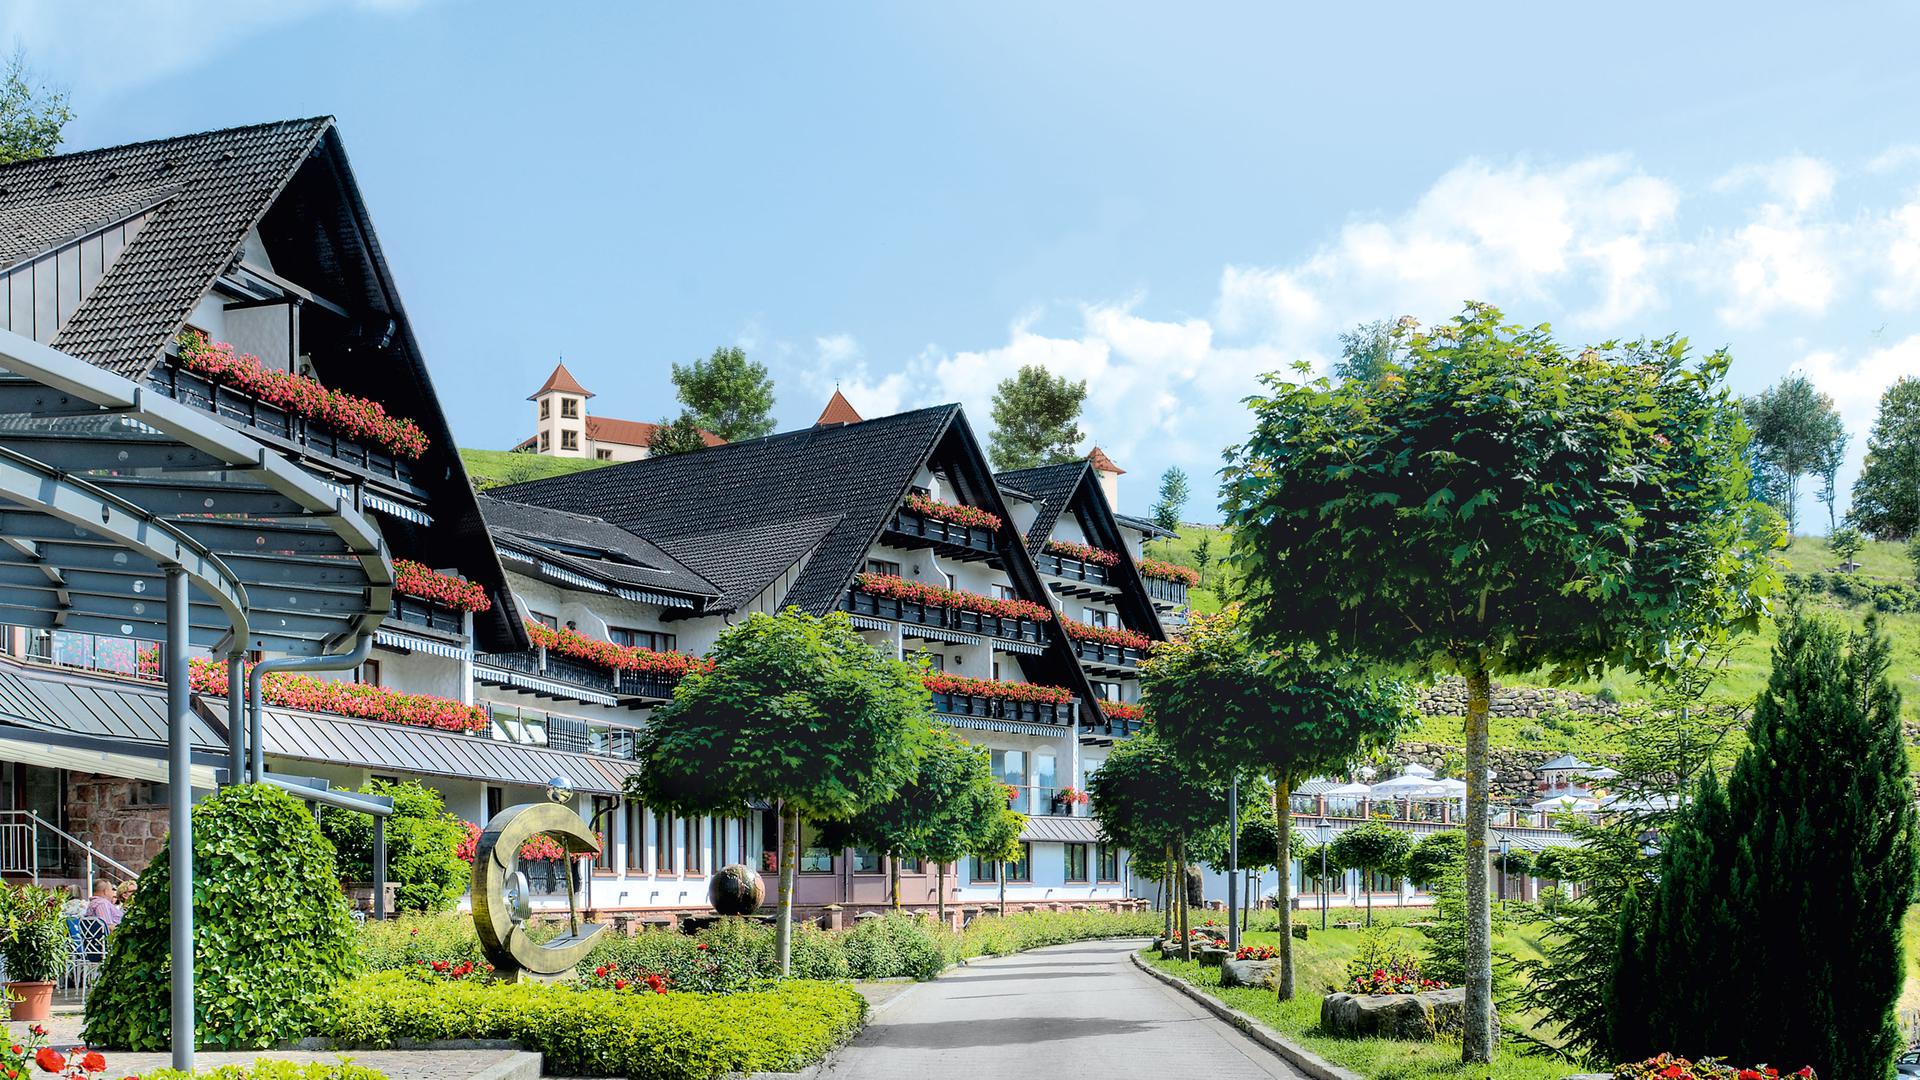 Der Hauptpreis: eine Übernachtung für Zwei im Schwarwald-Resort Dollenberg.